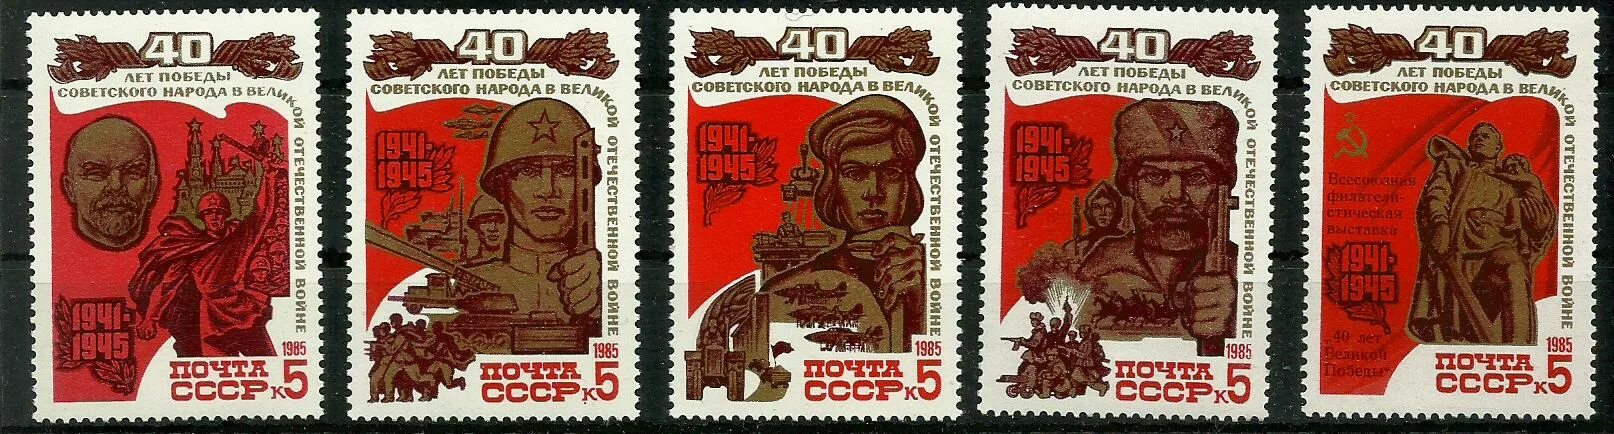 Каким событиям посвящены данные почтовые марки. Почтовая марка 40 лет Победы. Почтовая марка 1985 год. Почтовые марки СССР 1985.